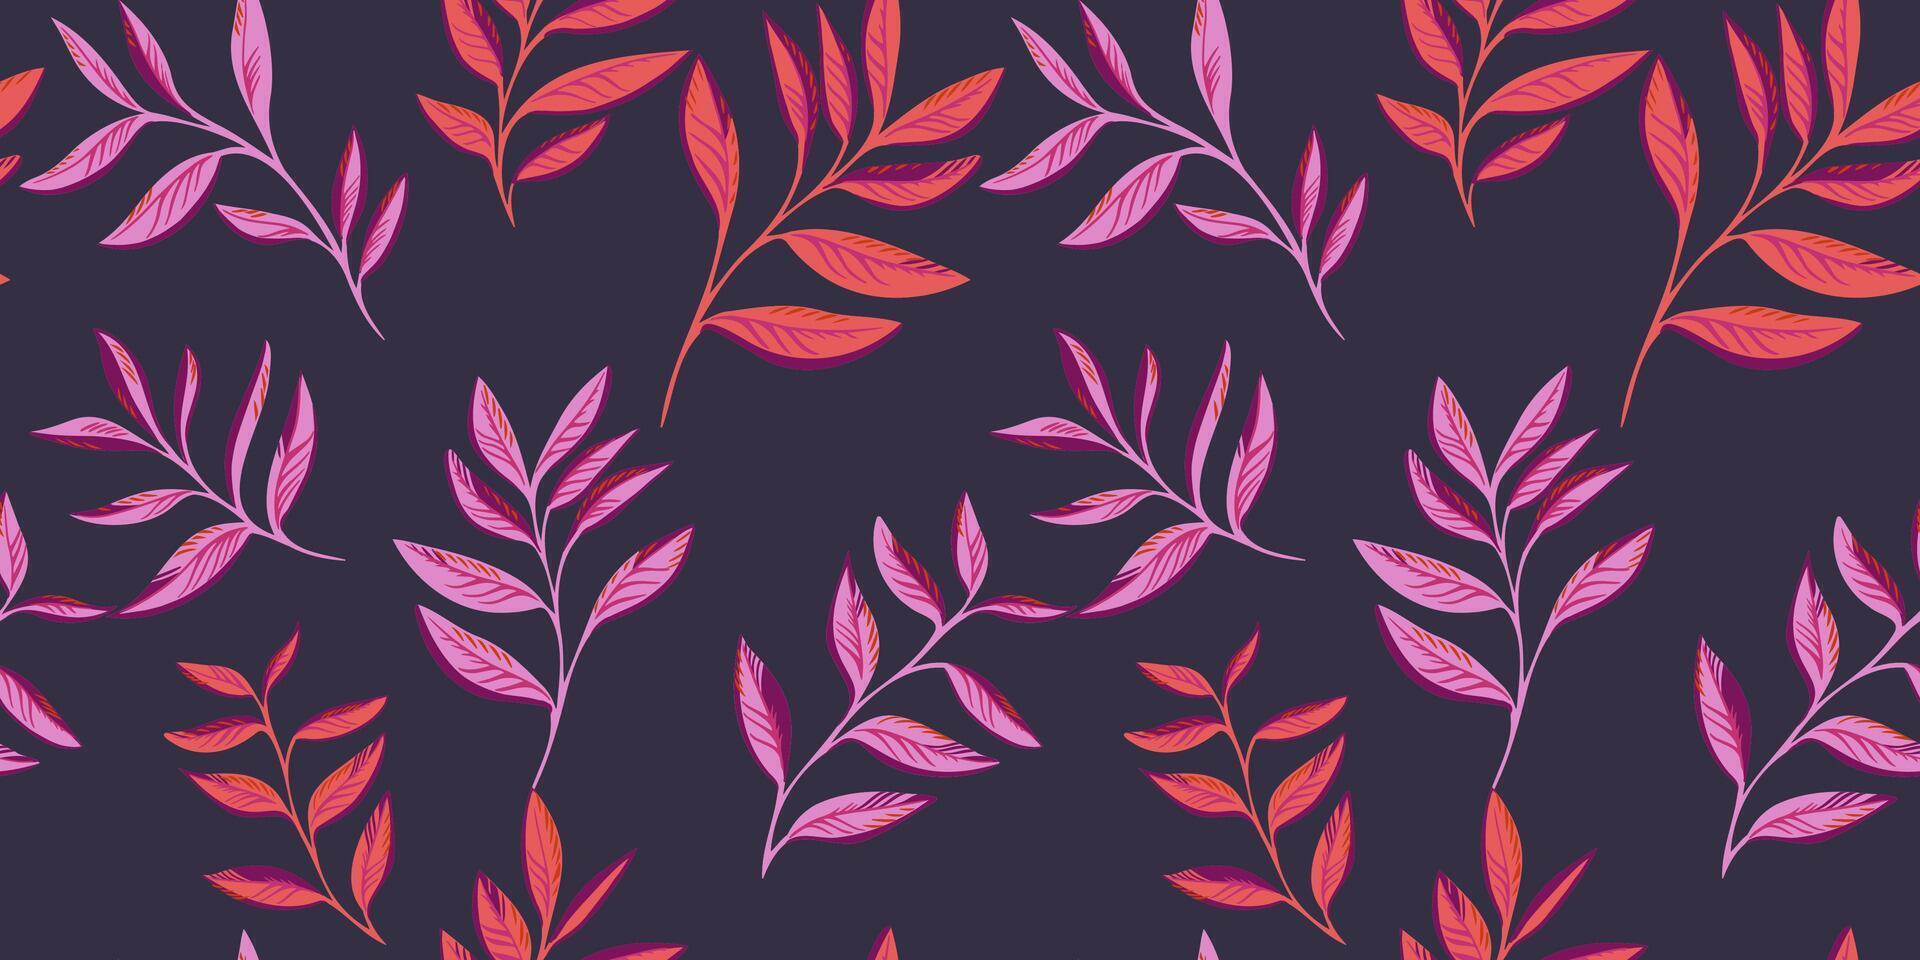 de minimalistisk enkel löv grenar mönster är spridd slumpvis. ljus abstrakt, stiliserade blad stjälkar utskrift på en mörk svart bakgrund. vektor hand ritade. mall för design, textil, skriva ut